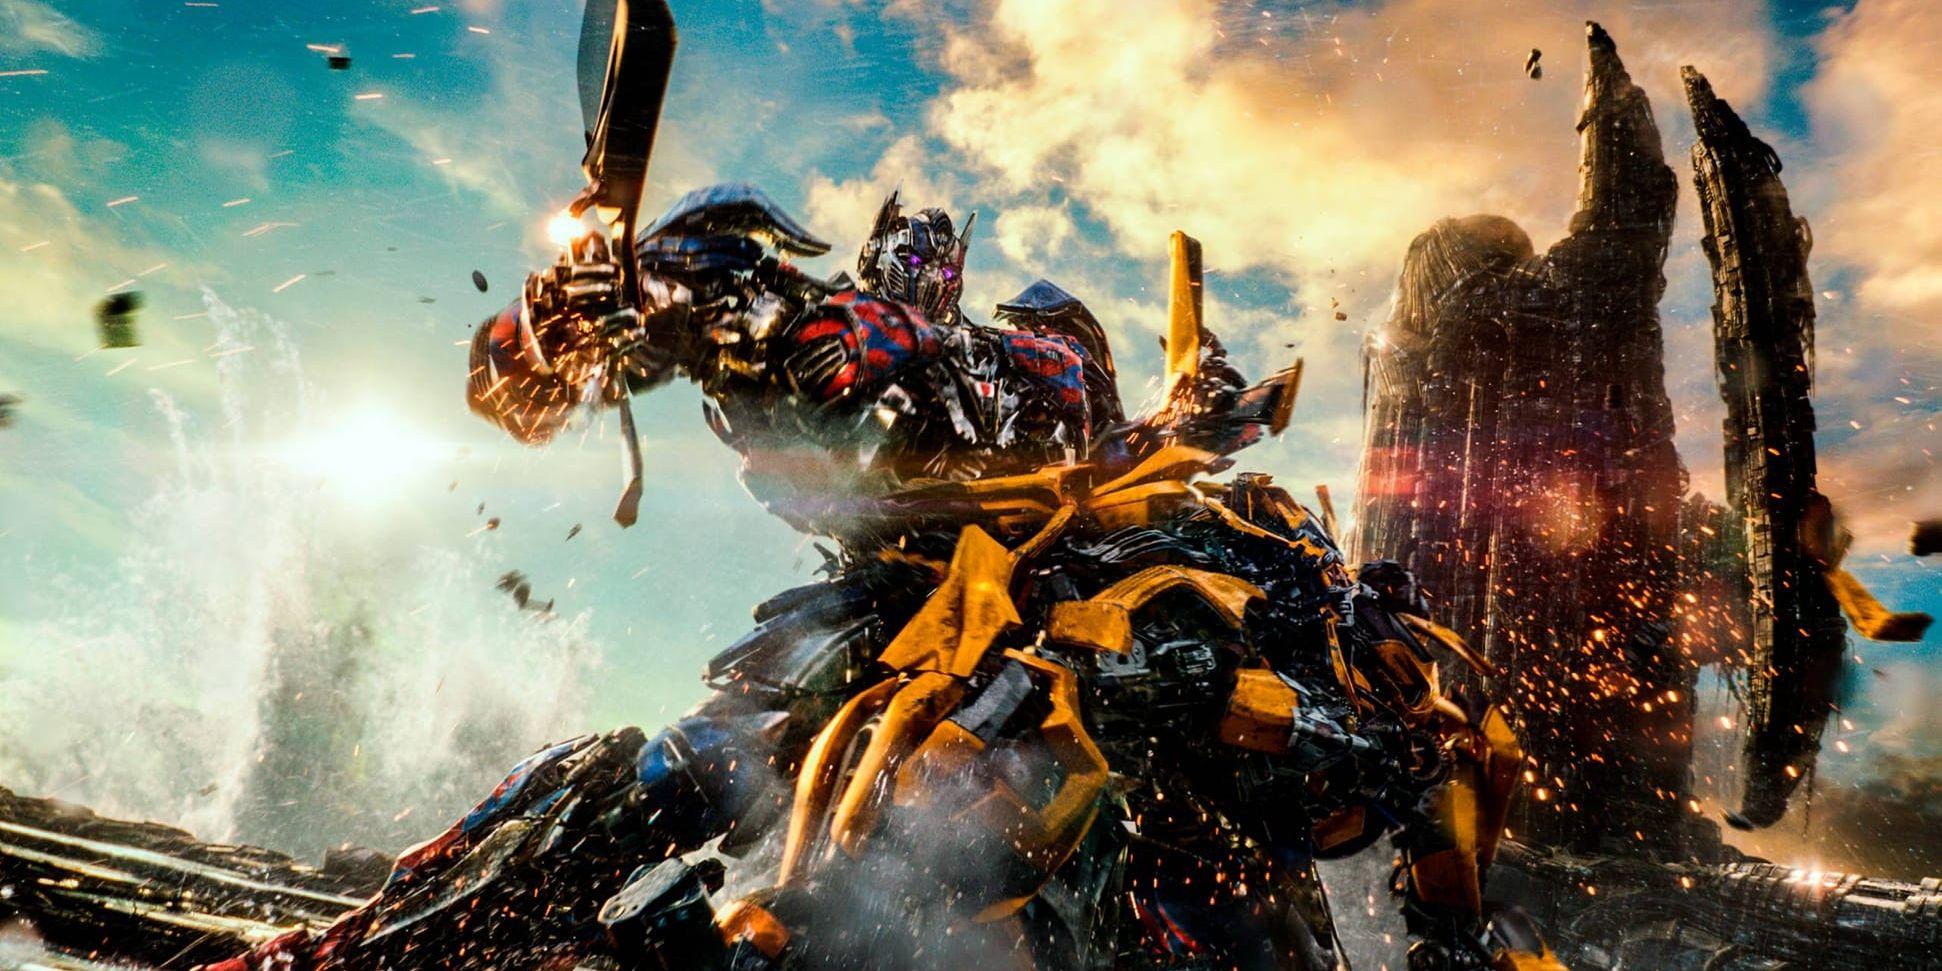 Den femte "Transformers"-filmen går knackigt, liksom många andra uppföljare på den amerikanska marknaden. Arkivbild.